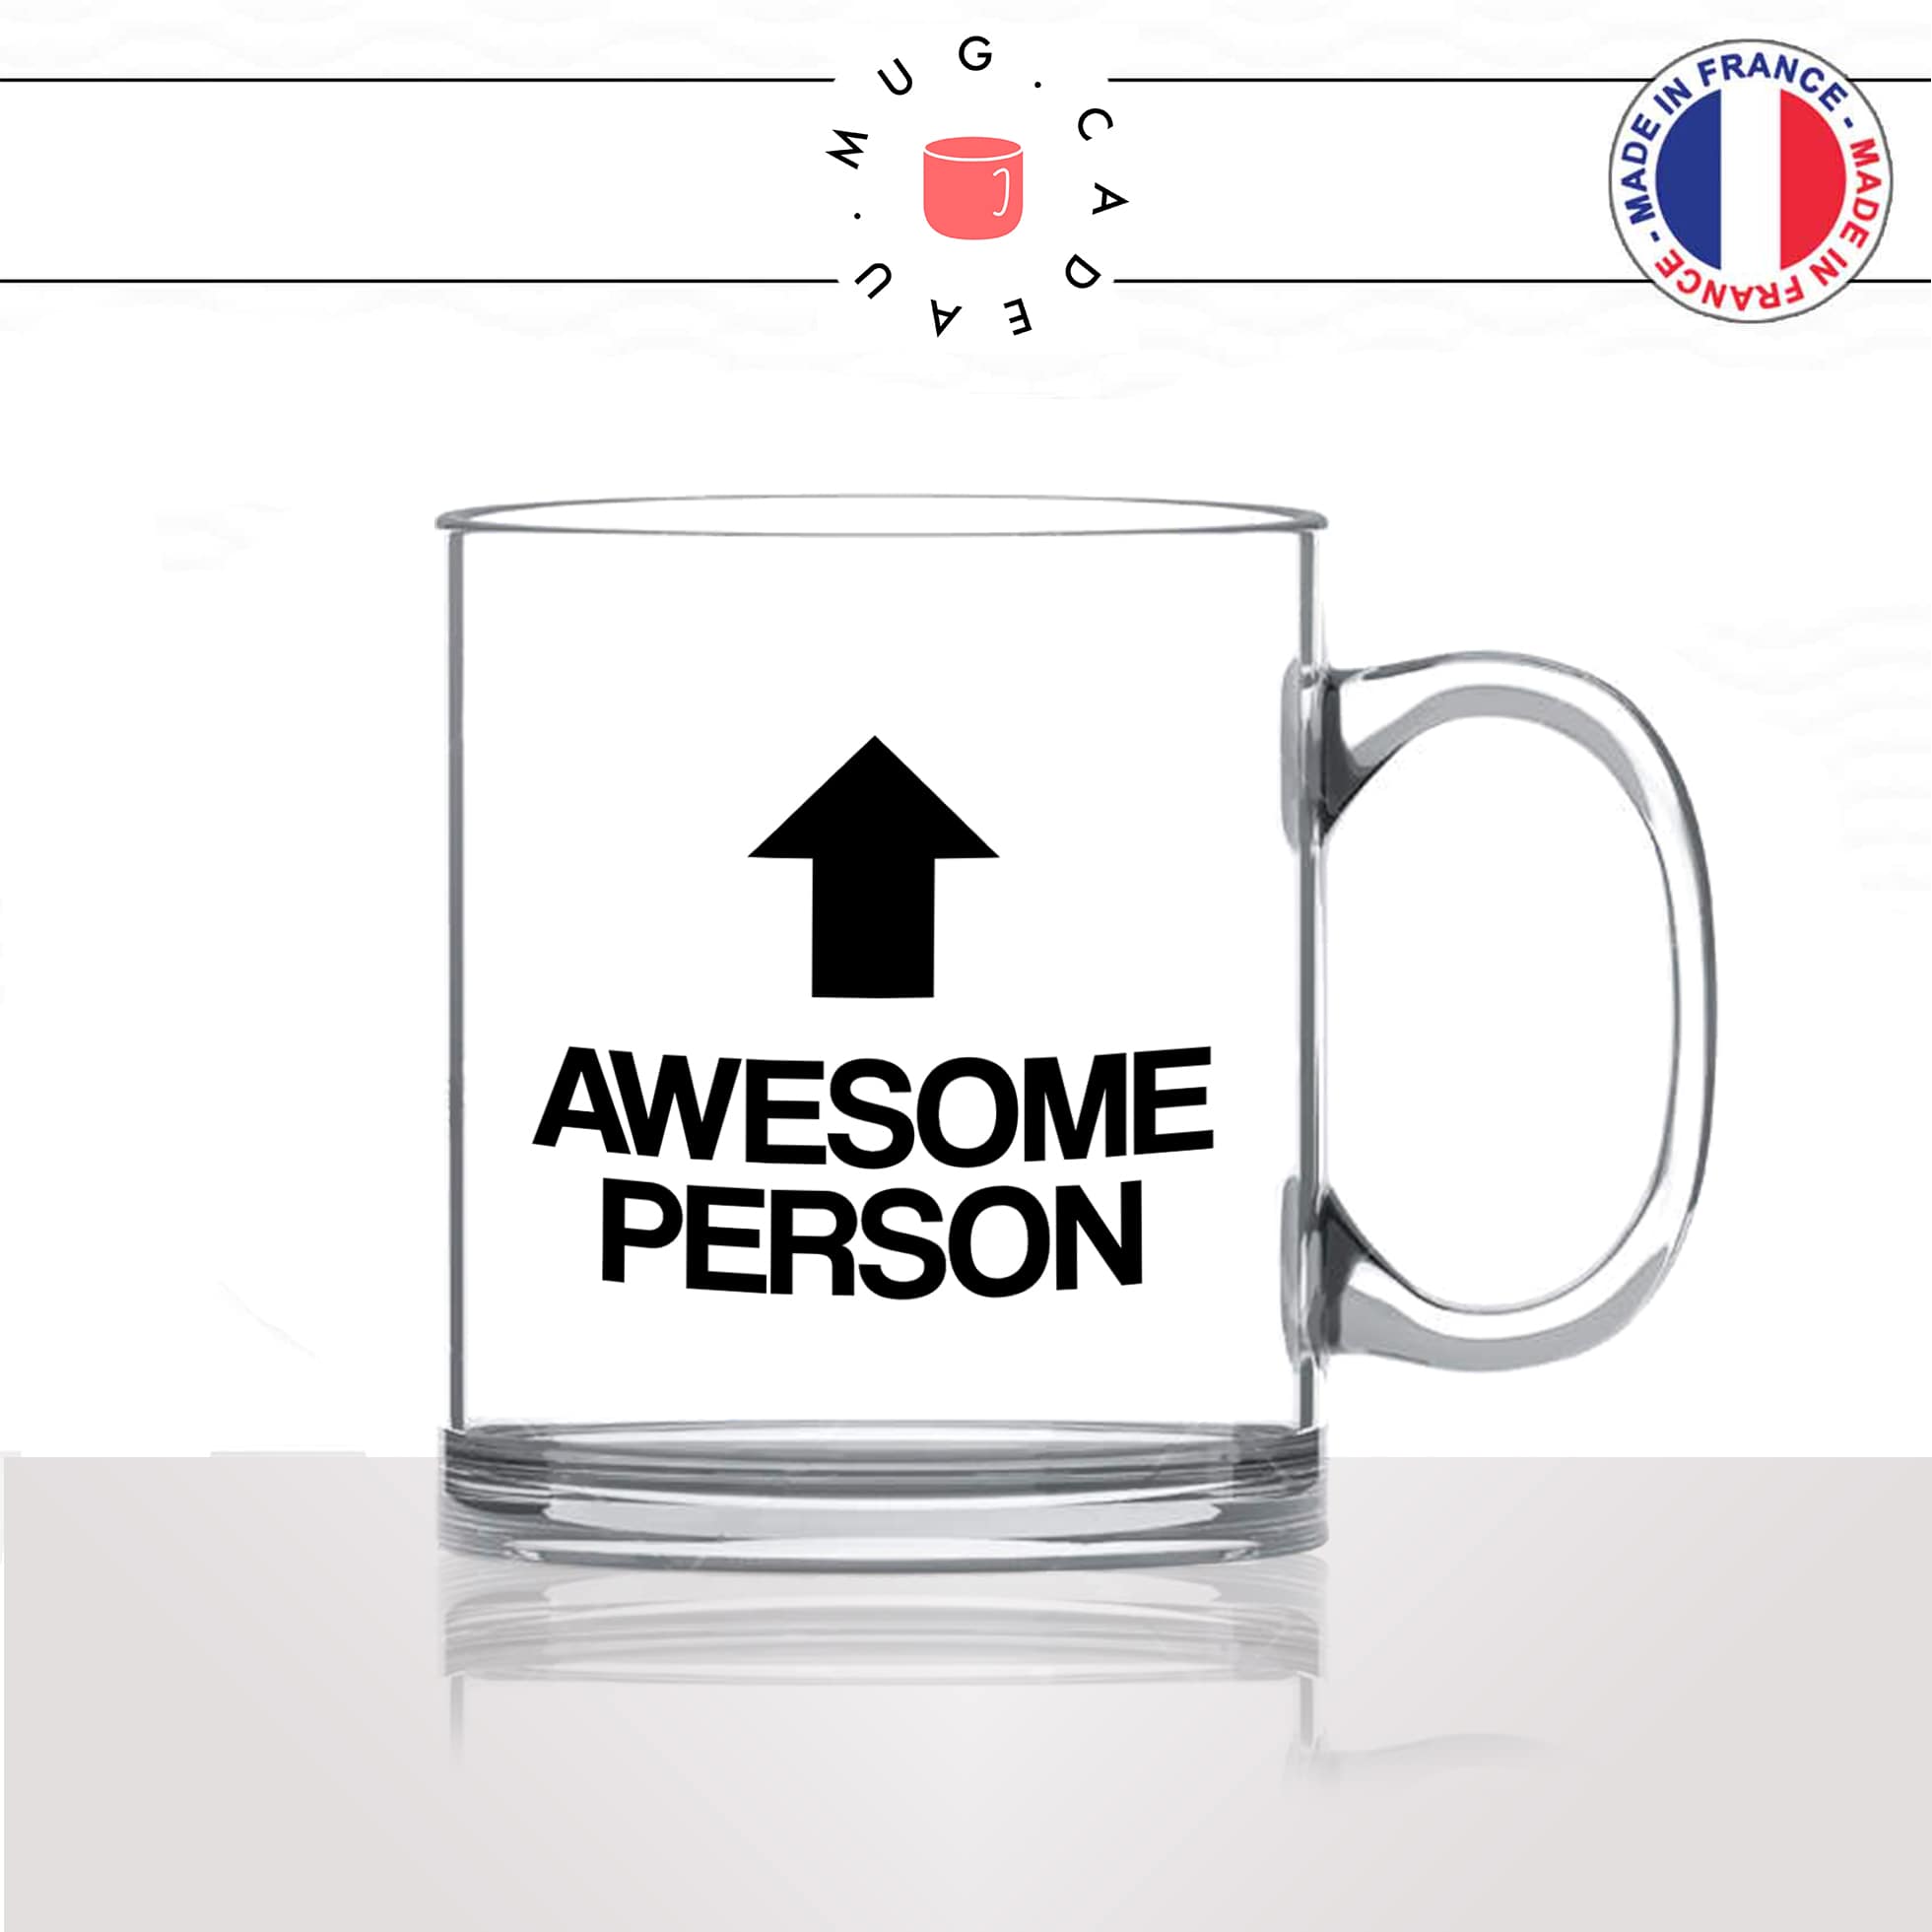 mug-tasse-en-verre-transparent-glass-awesome-person-femme-homme-copine-collegue-decoration-humour-idée-cadeau-fun-cool-café-thé-original2-min